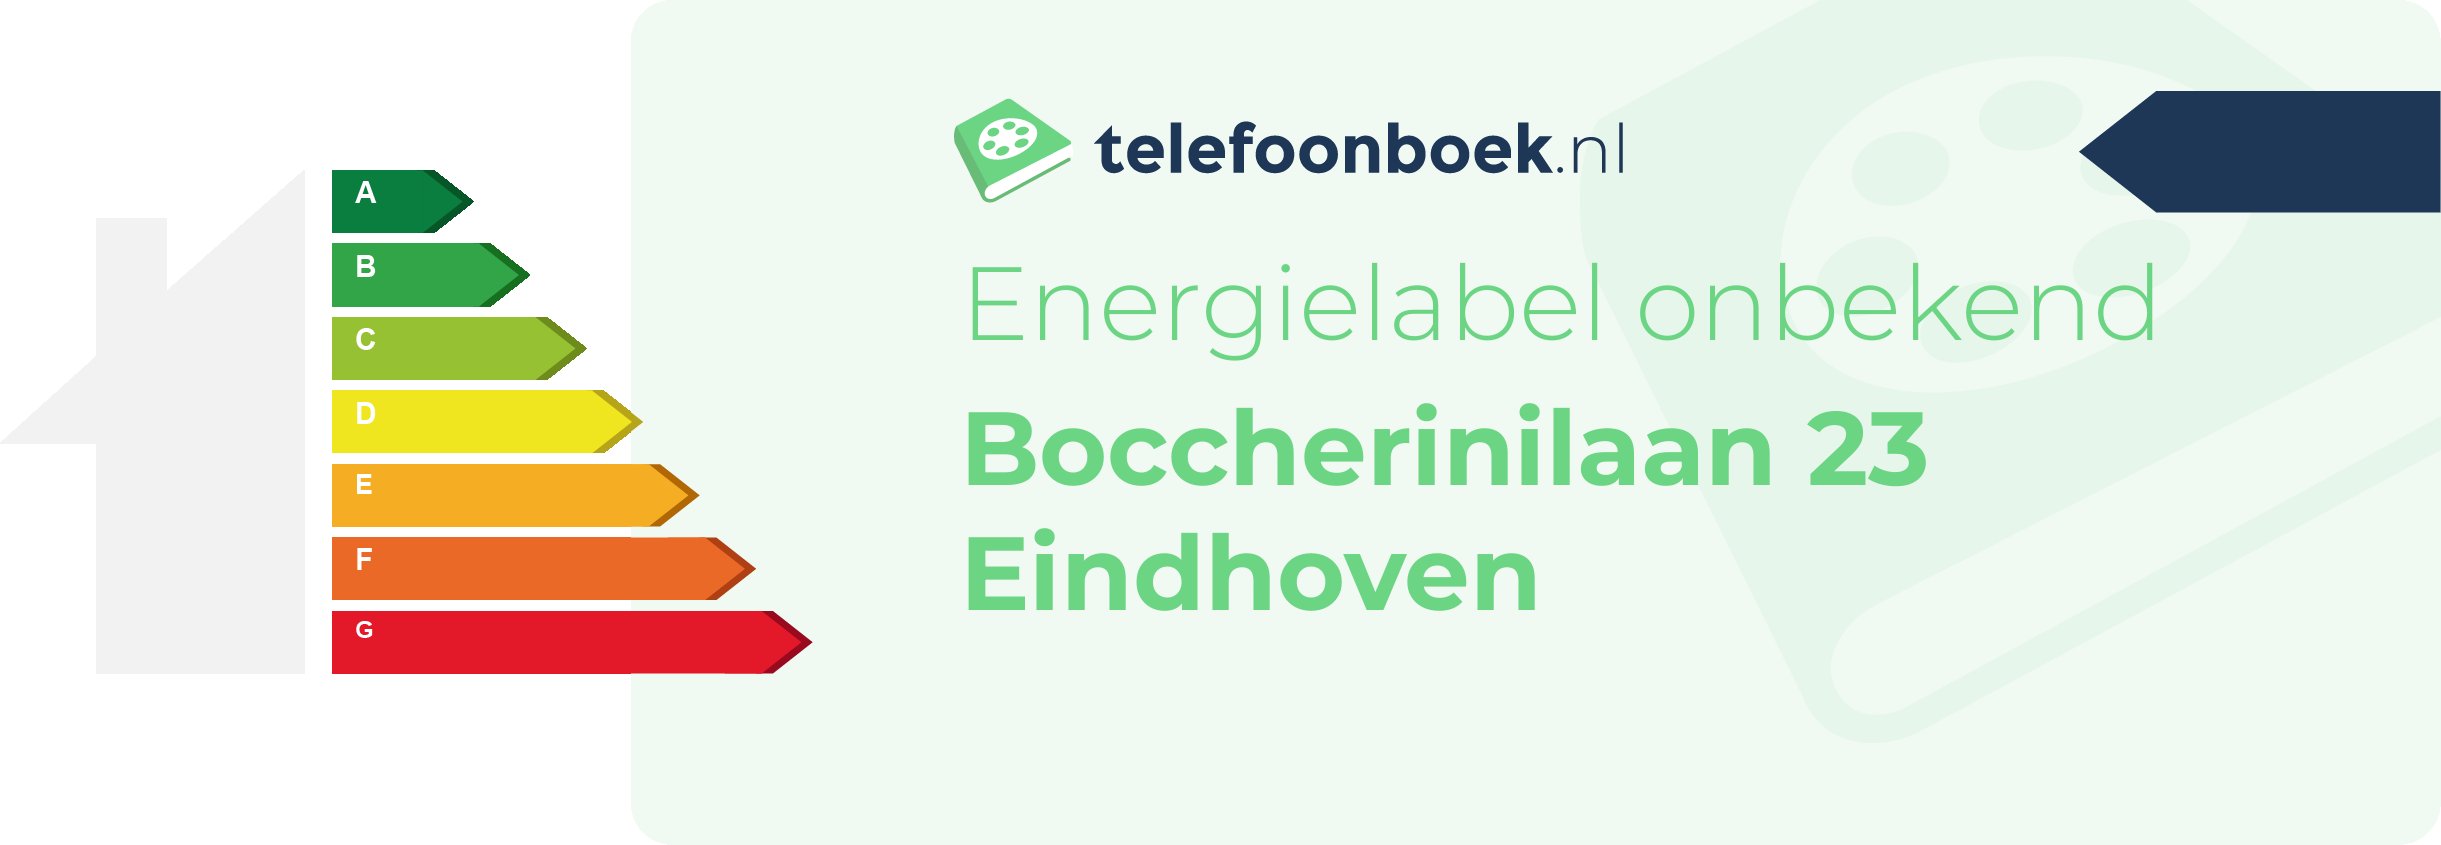 Energielabel Boccherinilaan 23 Eindhoven